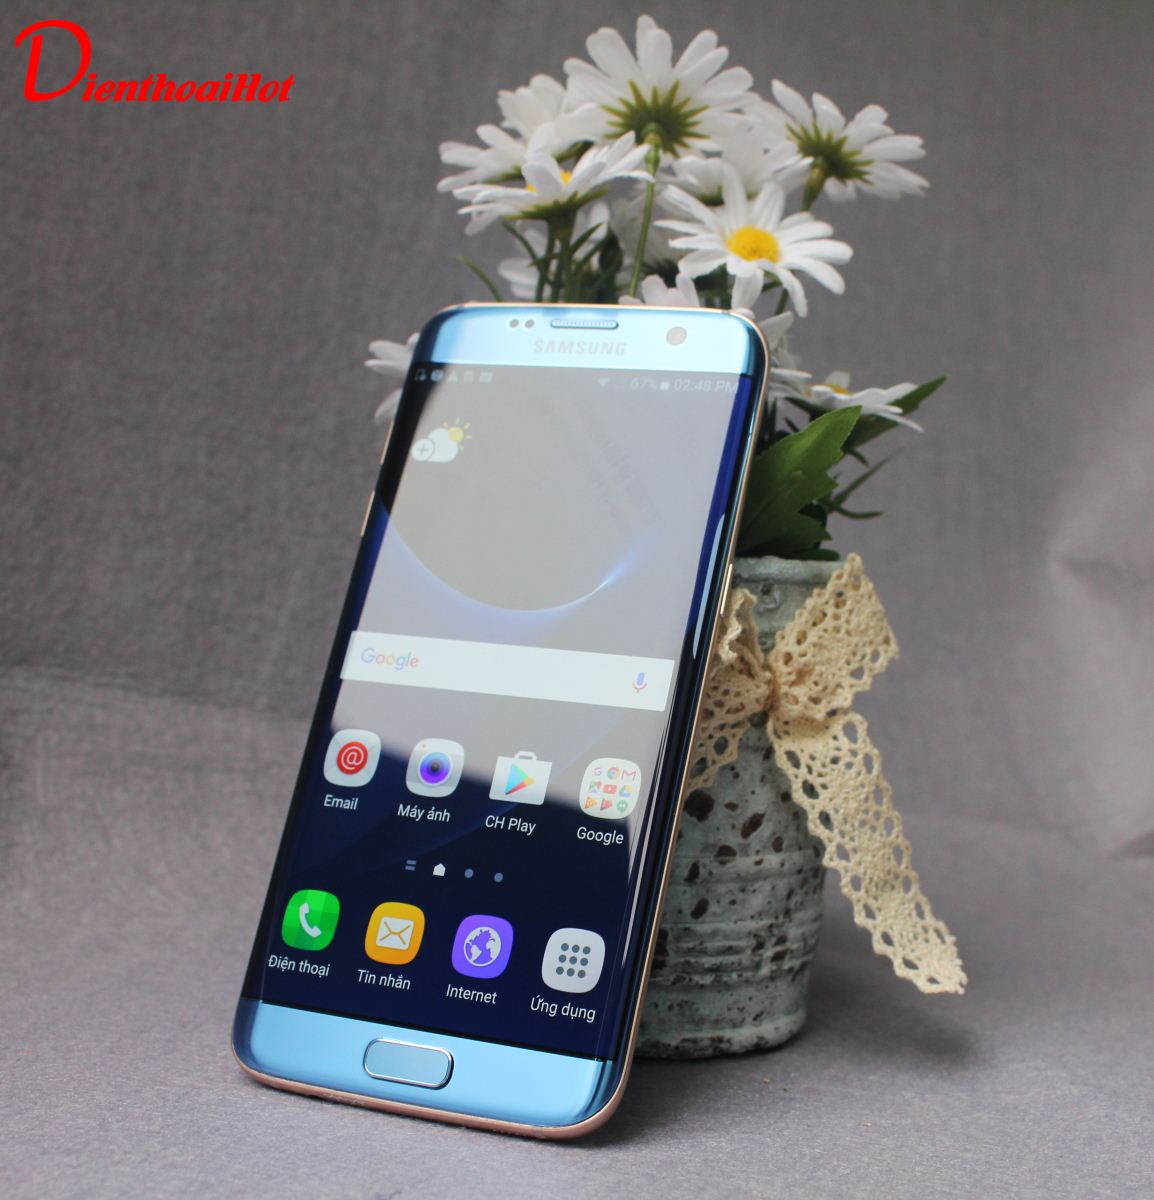 Samsung Galaxy S7 Edge Blue Coral xách tay có ngoại hình tuyệt đẹp